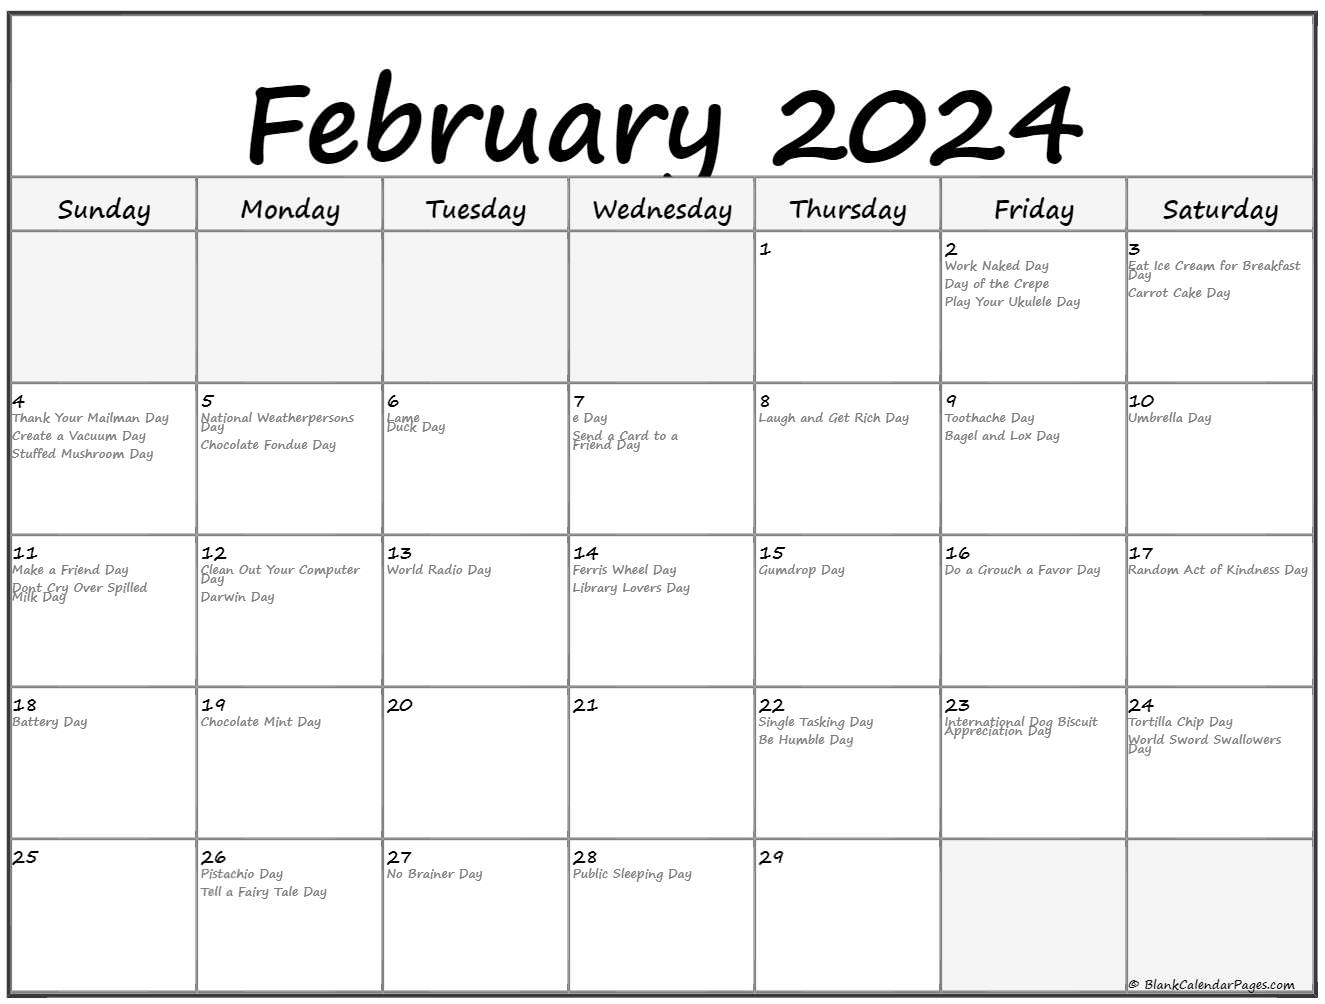 National Day Calendar Feb 2024 Moyra Tiffany